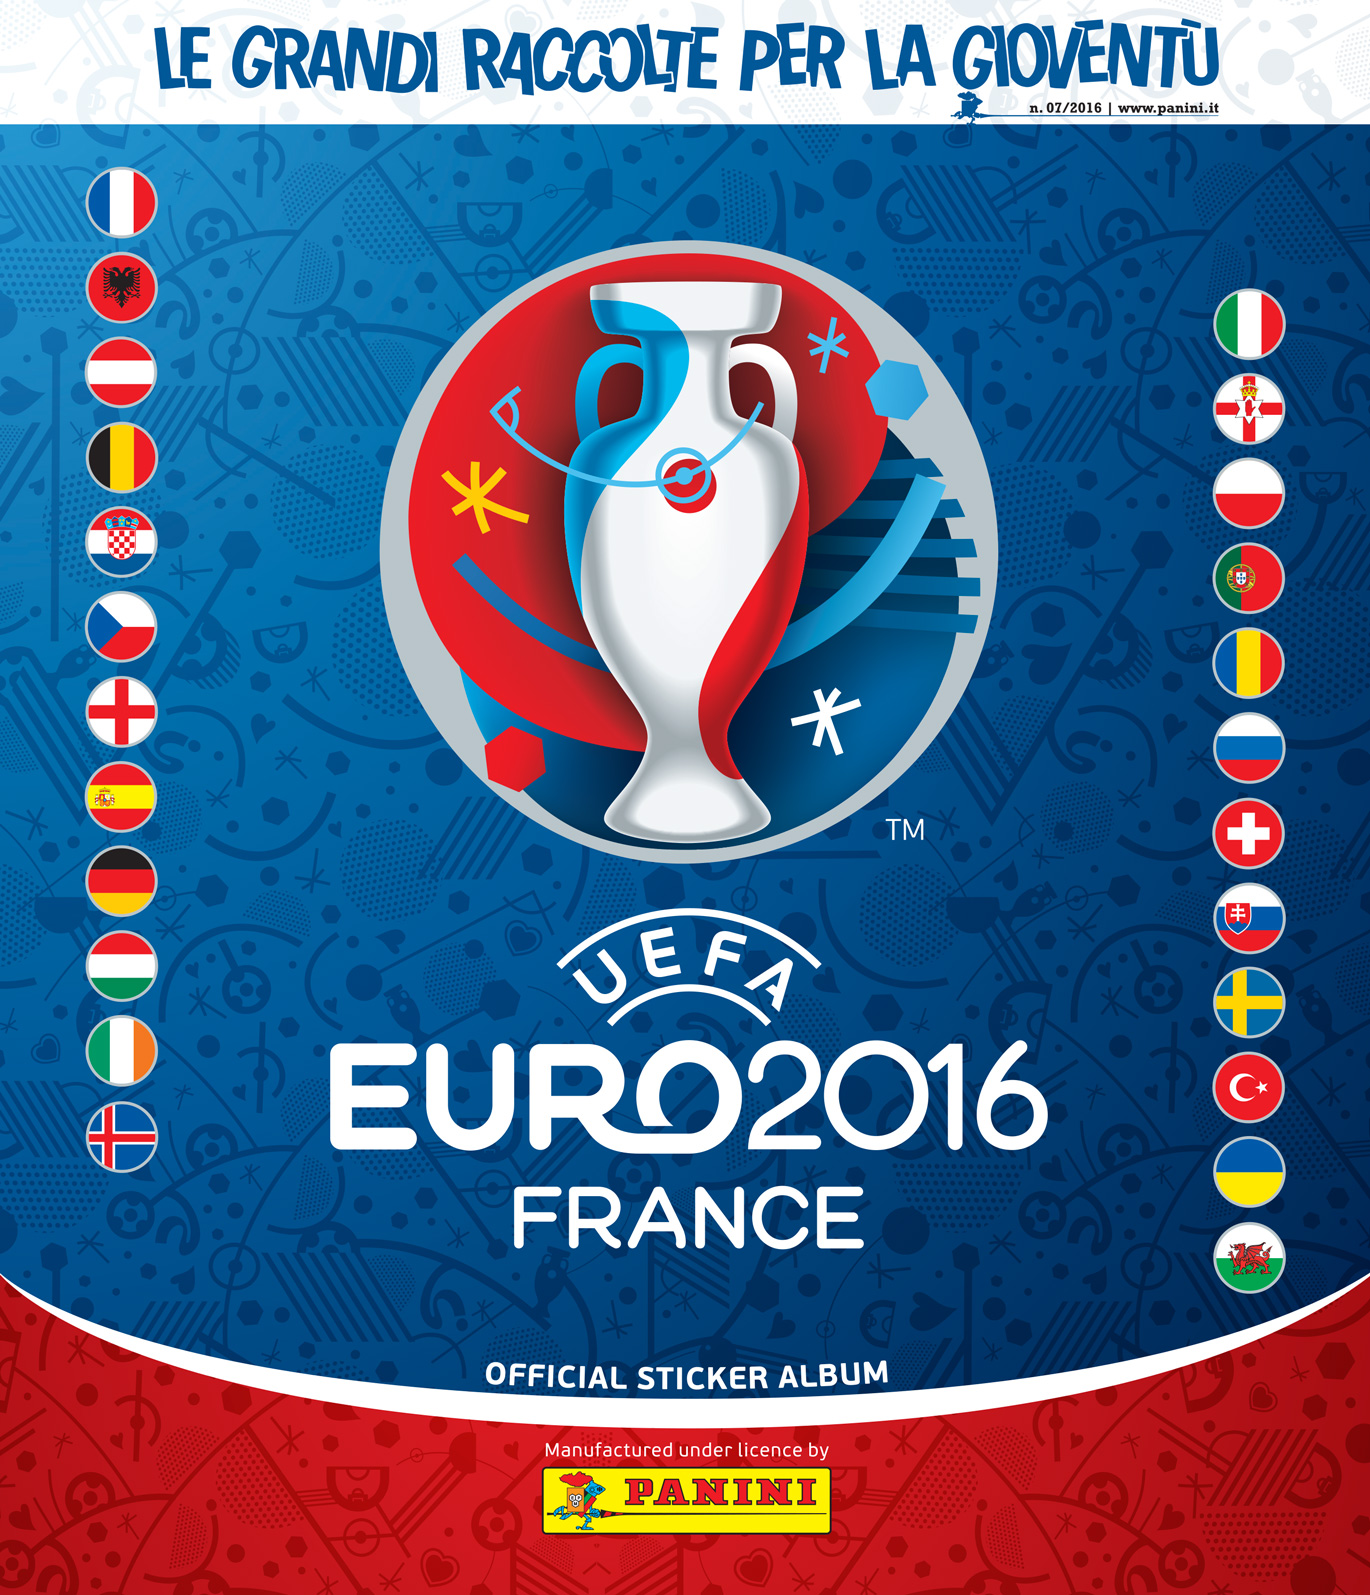 EURO 2016 ROMANIA CALCIATORI PANINI Europa *** SCEGLI FIGURINA ****